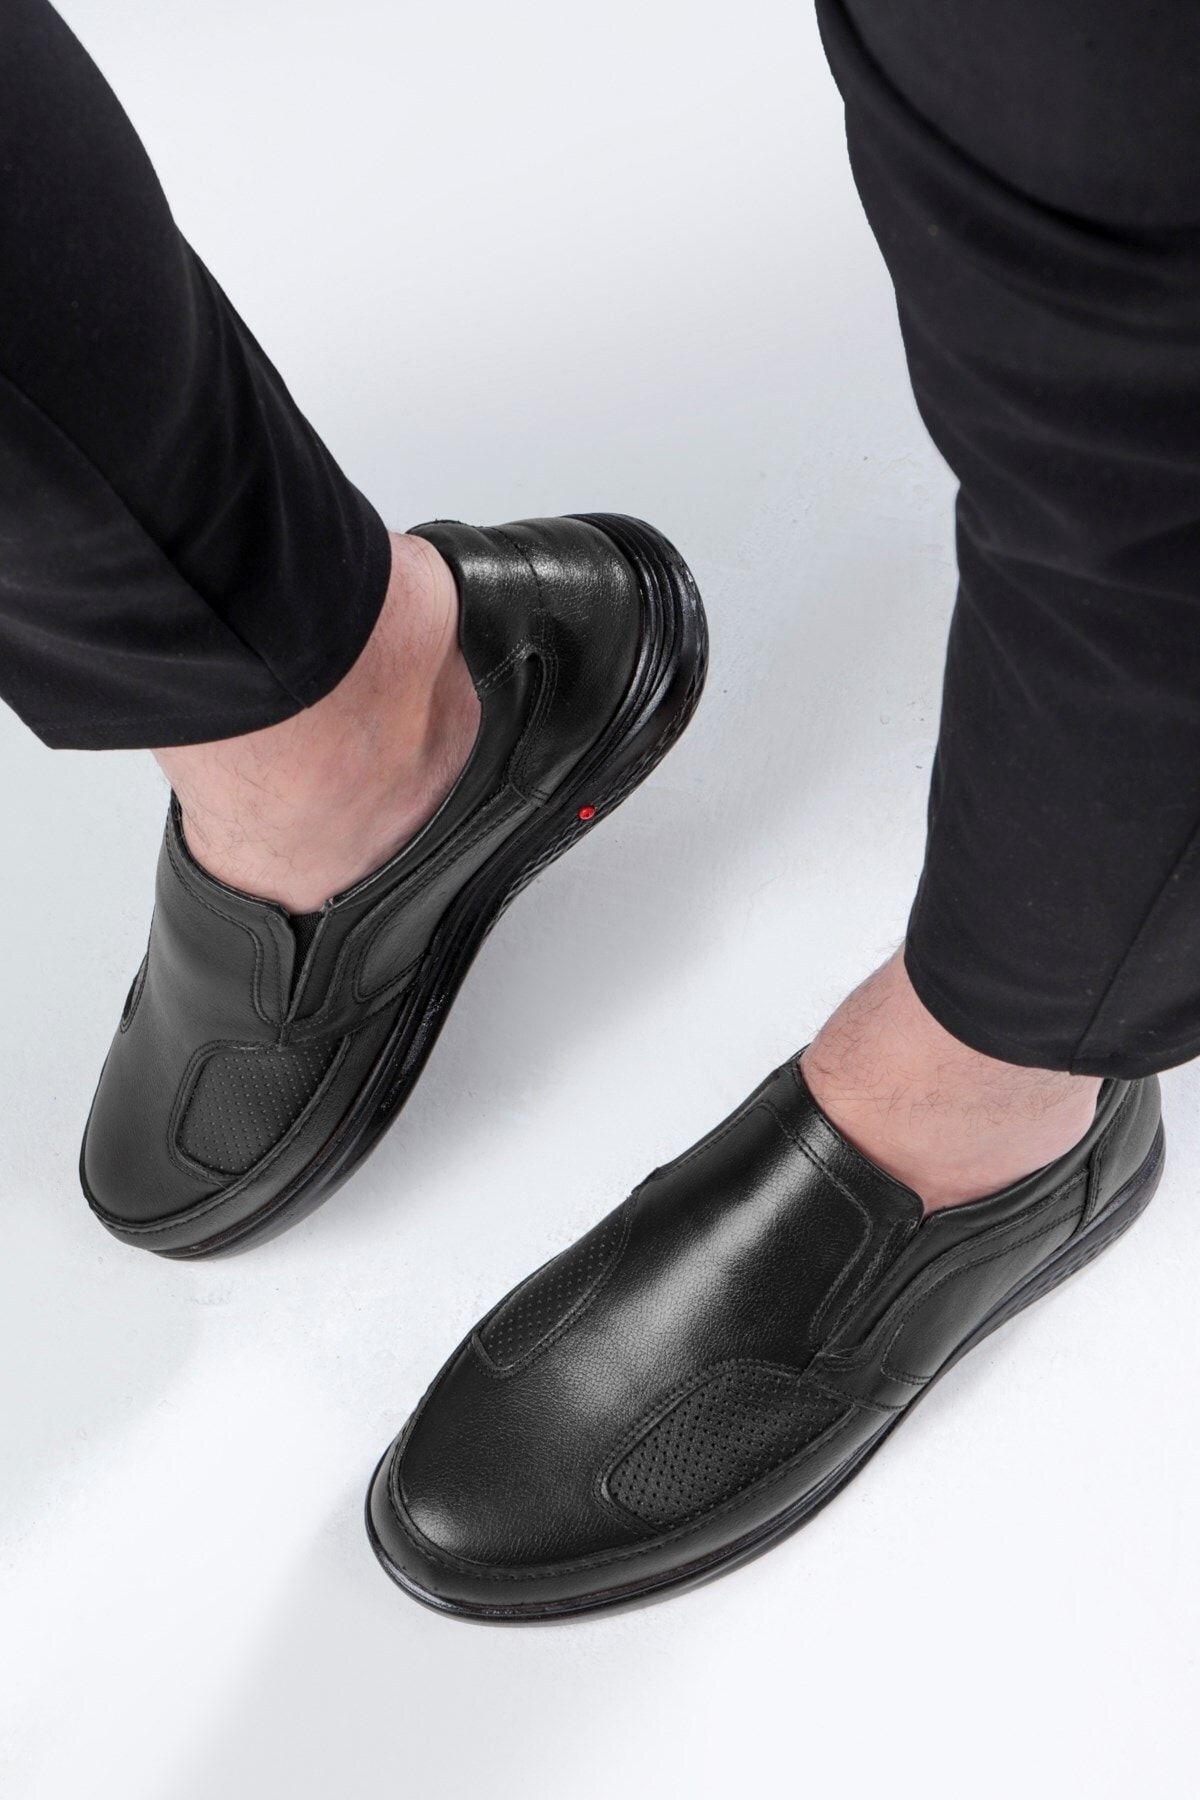 Ducavelli Lofor Hakiki Deri Comfort Ortopedik Erkek Günlük Ayakkabı, Baba Ayakkabısı, Ortopedik Ayakkabı